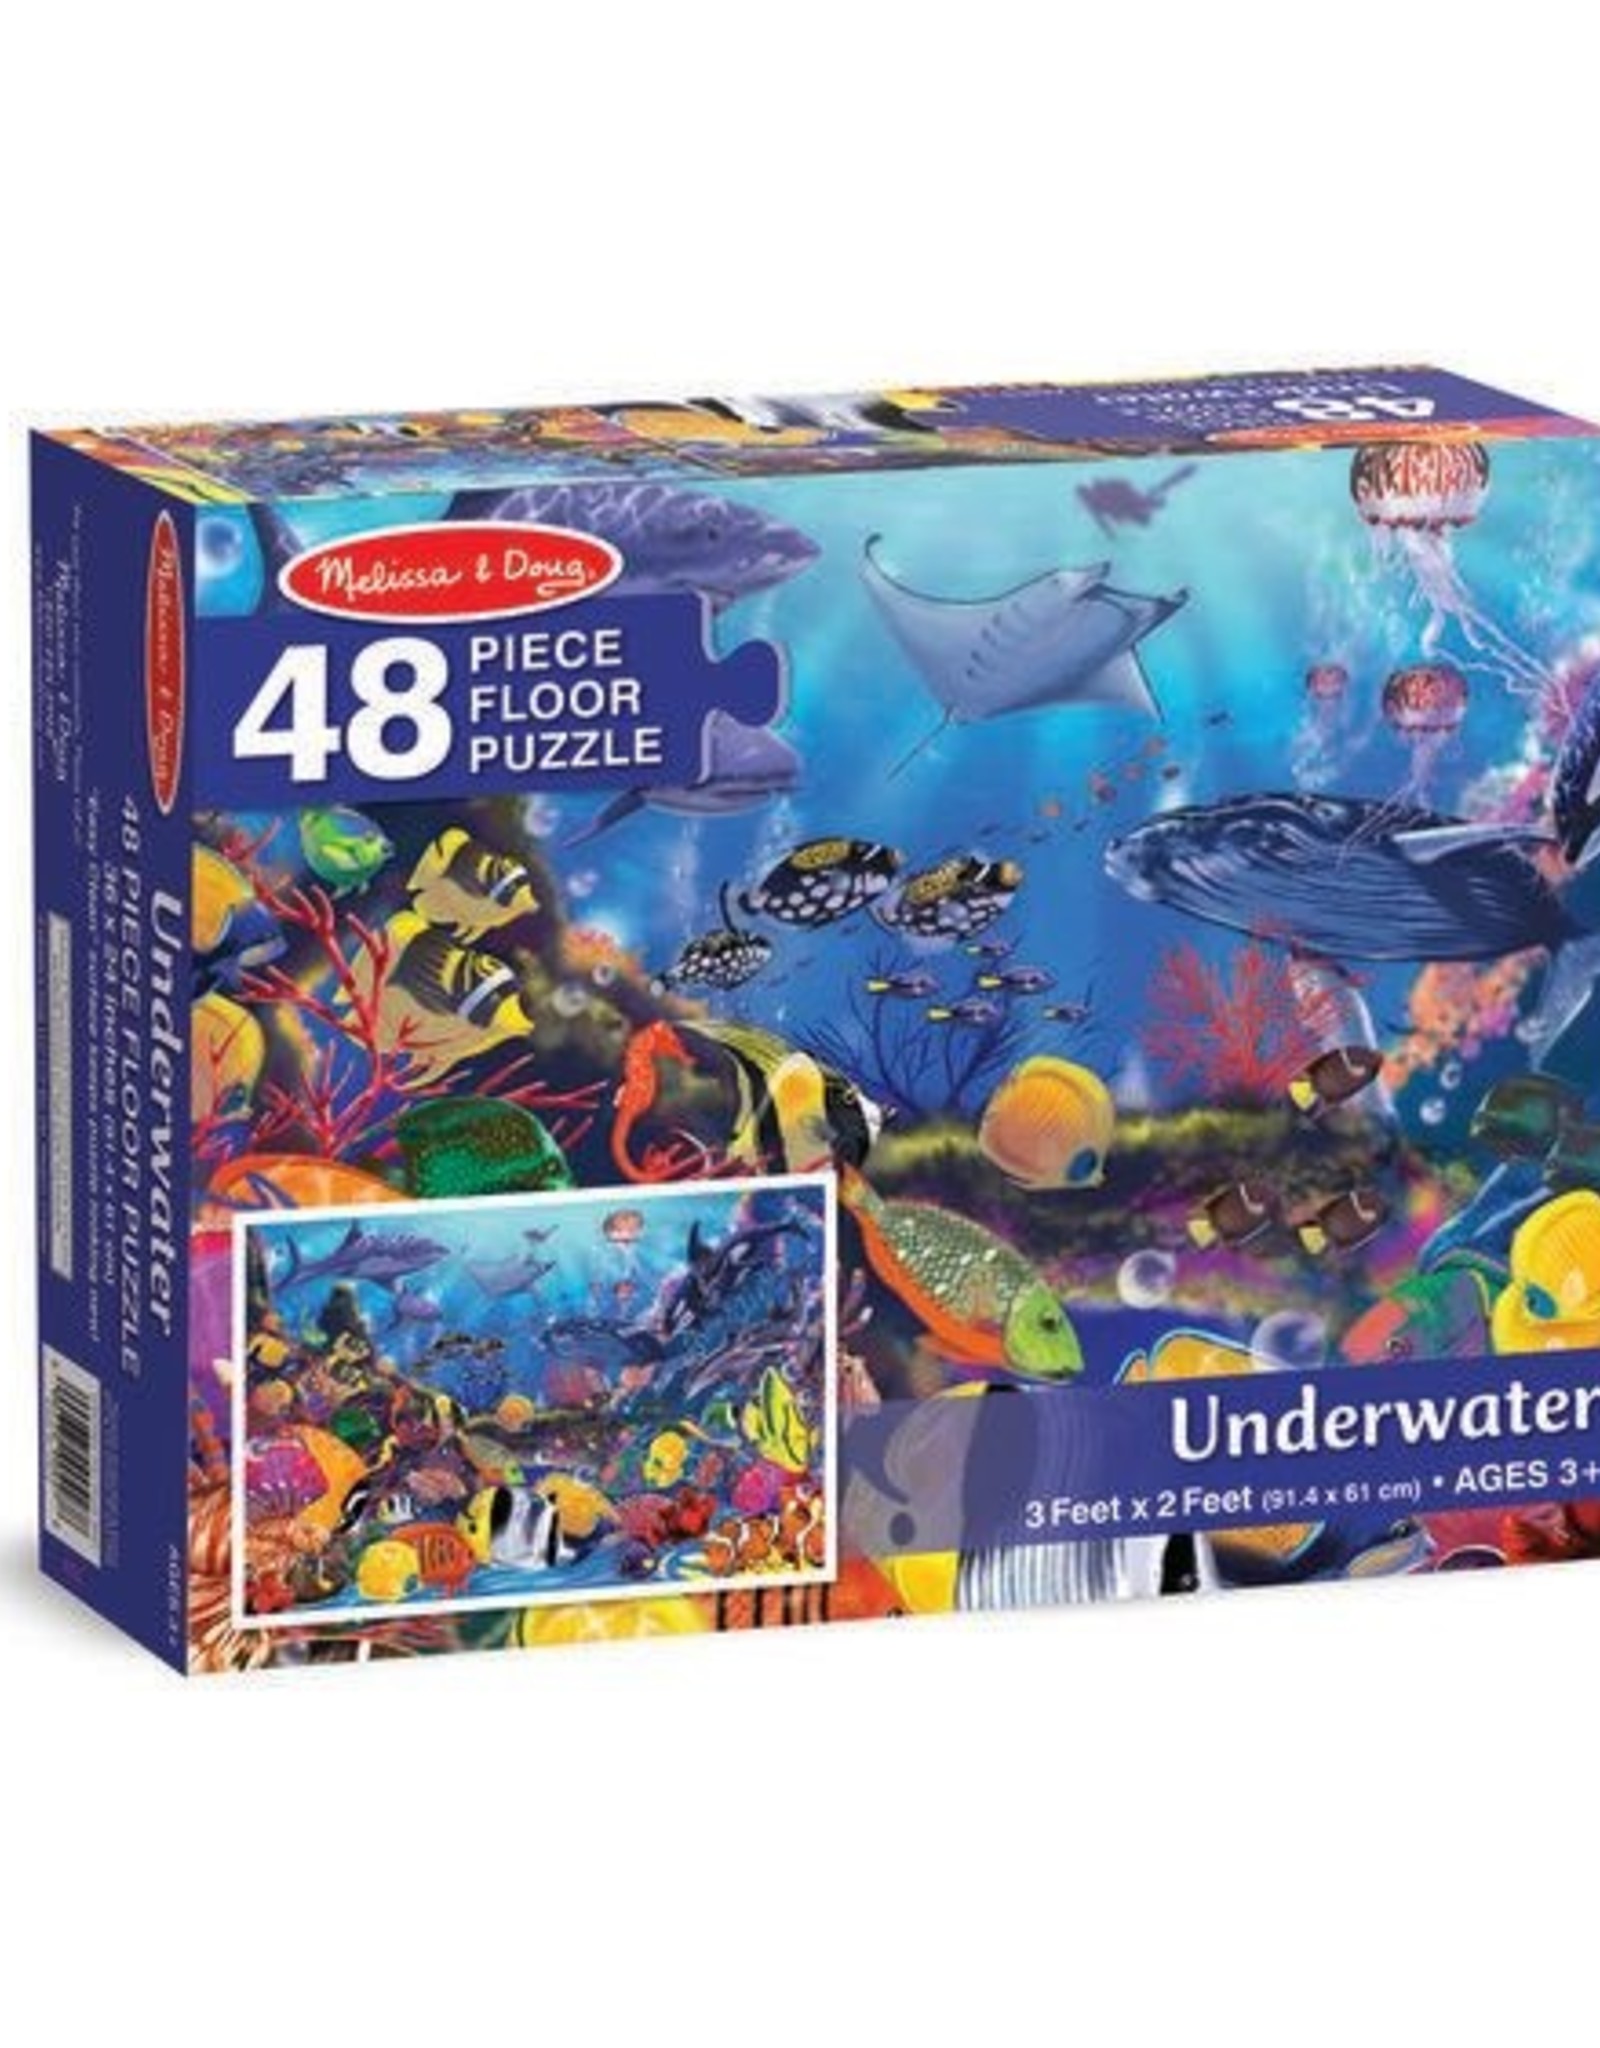 Melissa & Doug MD 48pc Floor Puzzle Underwater